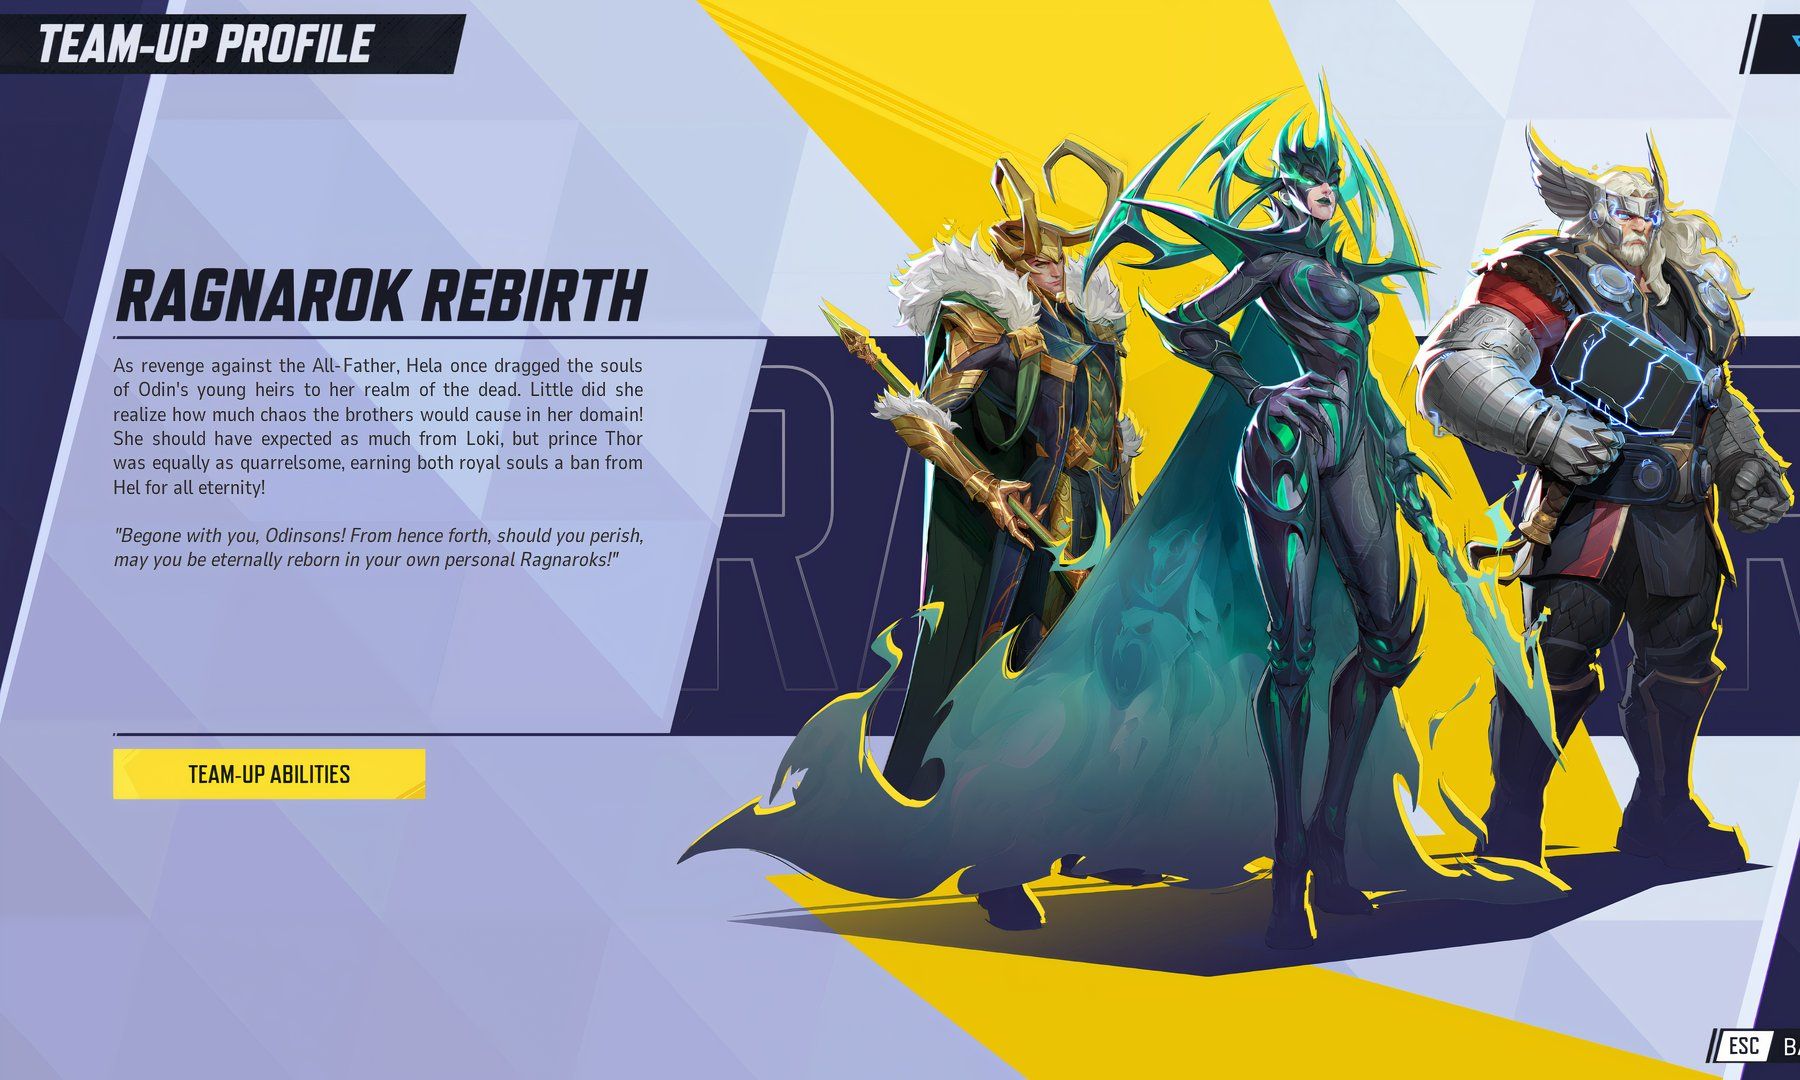 Perfil da equipe Ragnarok Rebirth no jogo